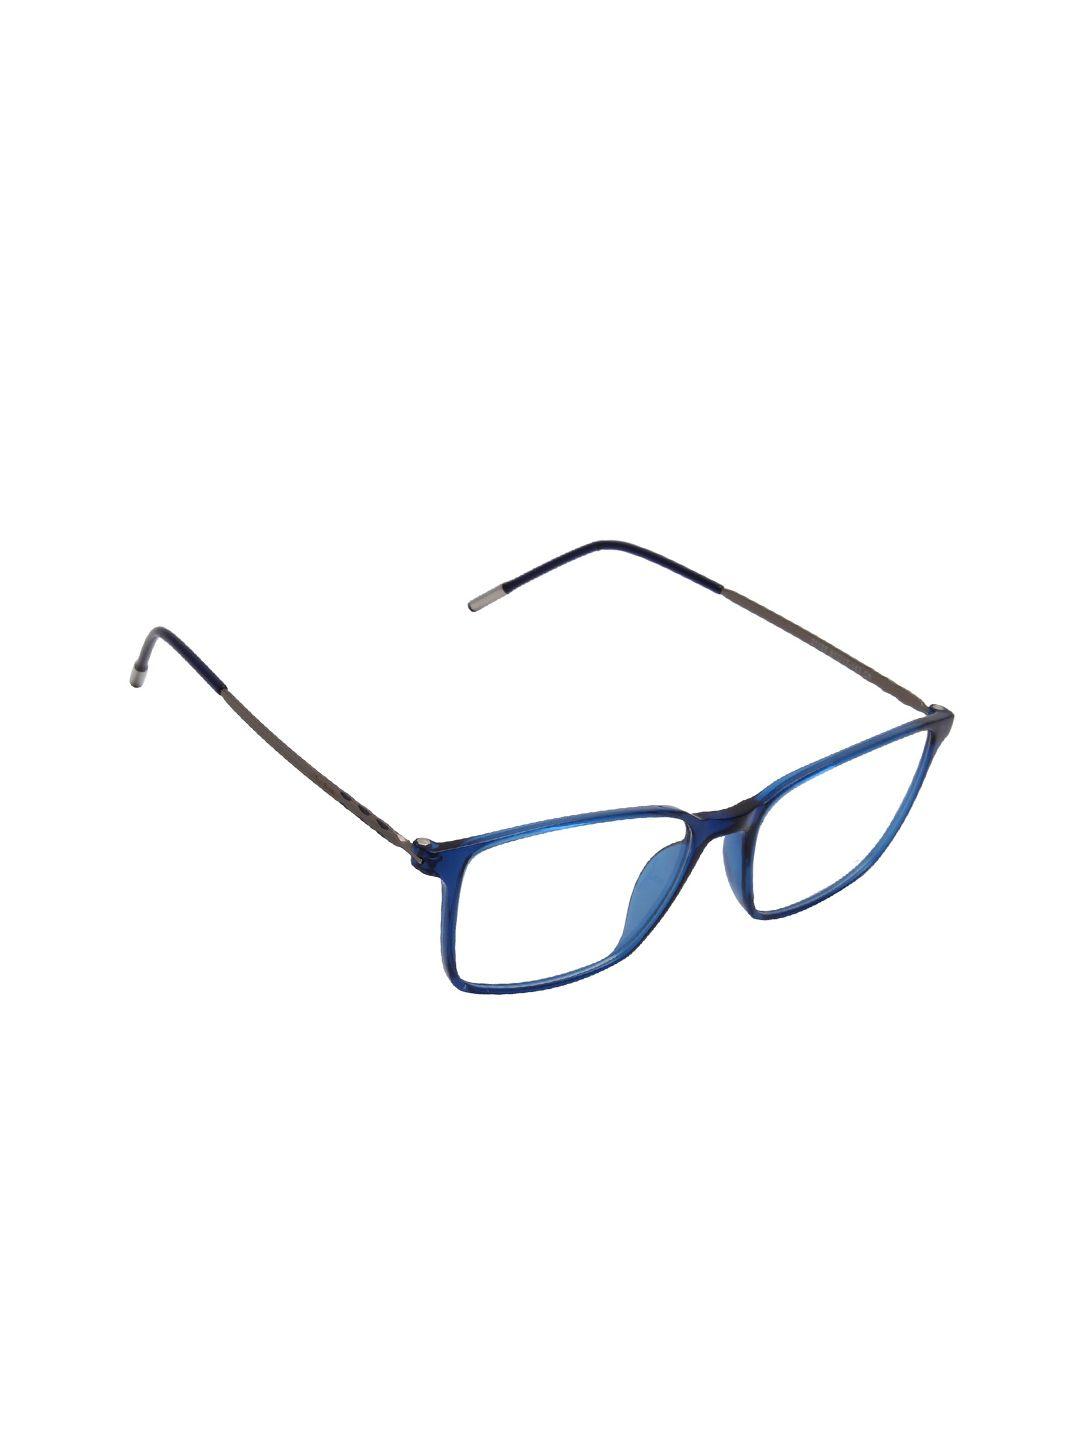 ted smith unisex blue & black full rim square frameframes eyeglasses